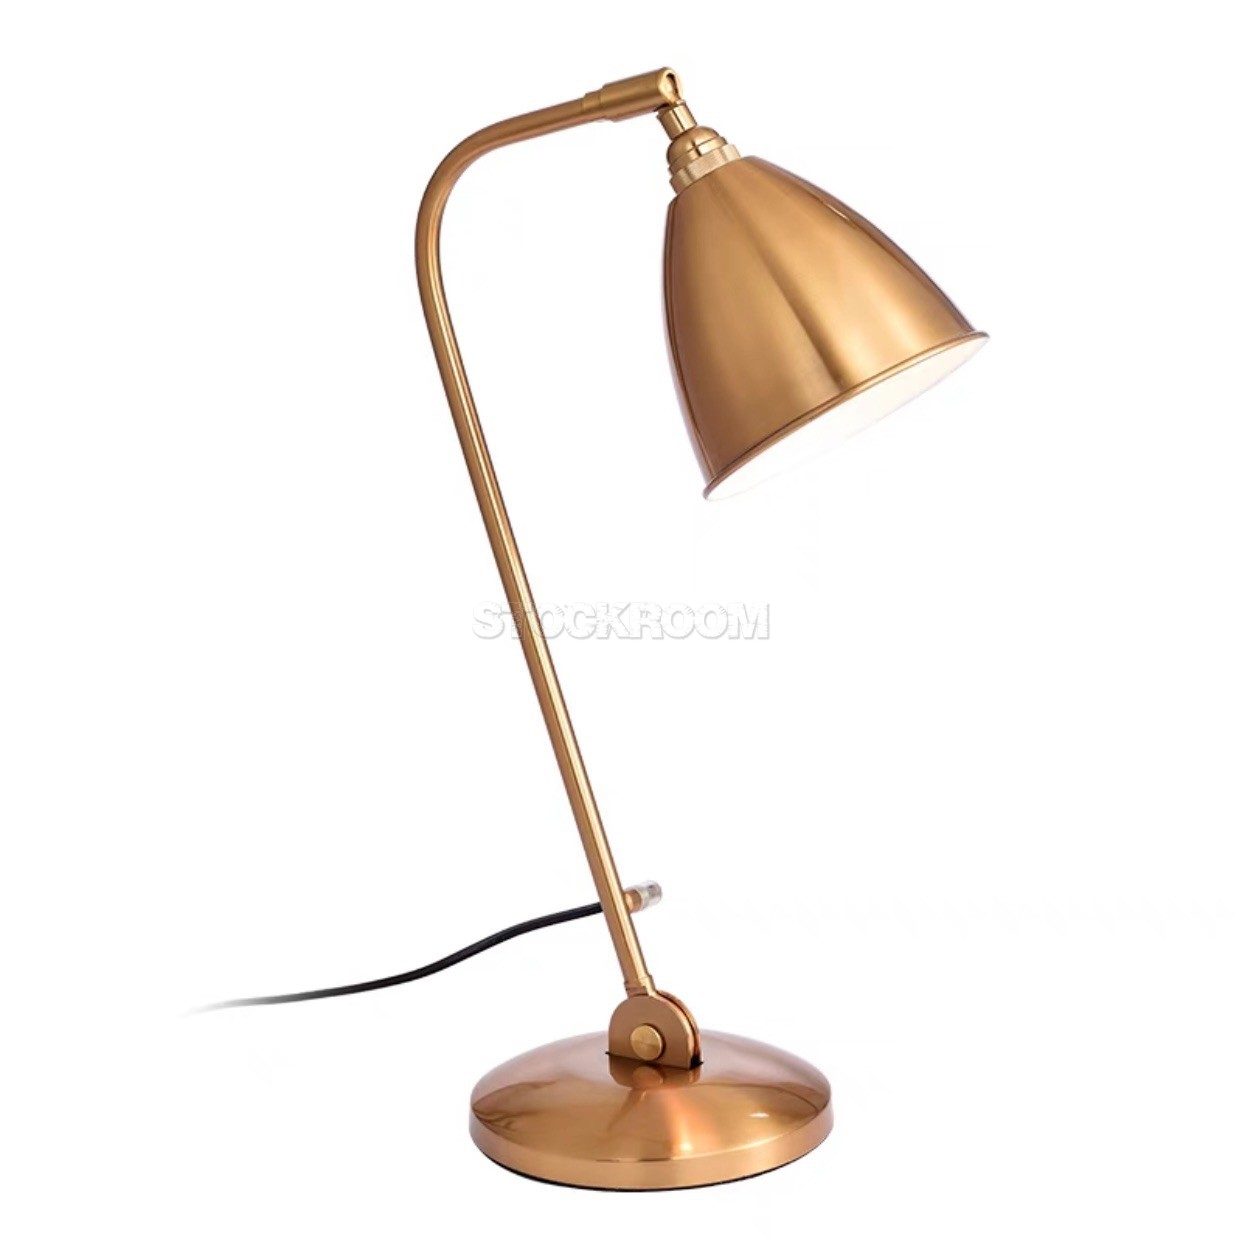 Bestlite Style Table Lamp